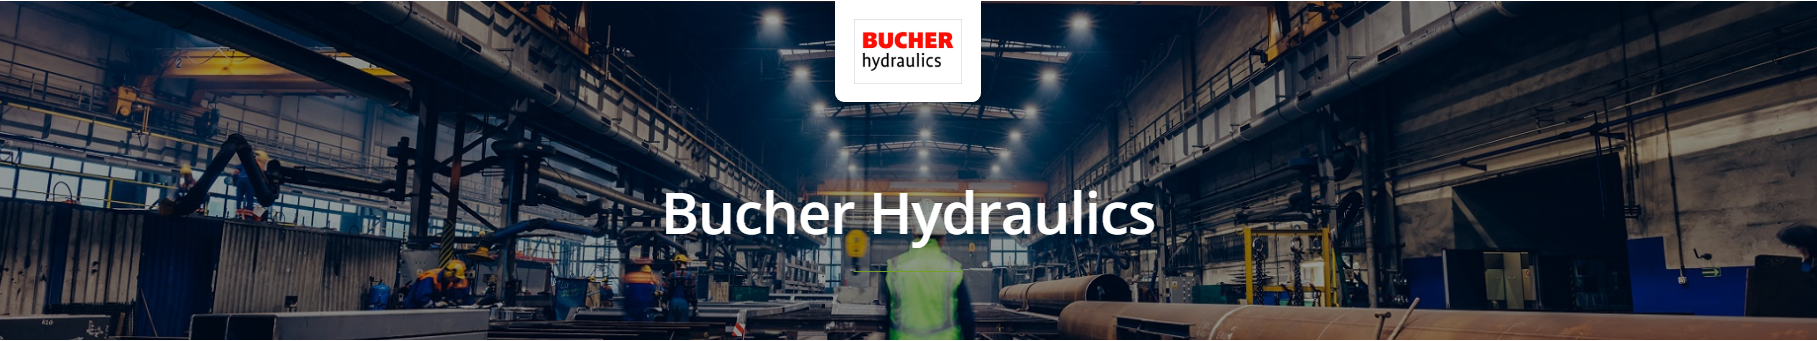 Bucher Hydraulics Pressure Function Valves